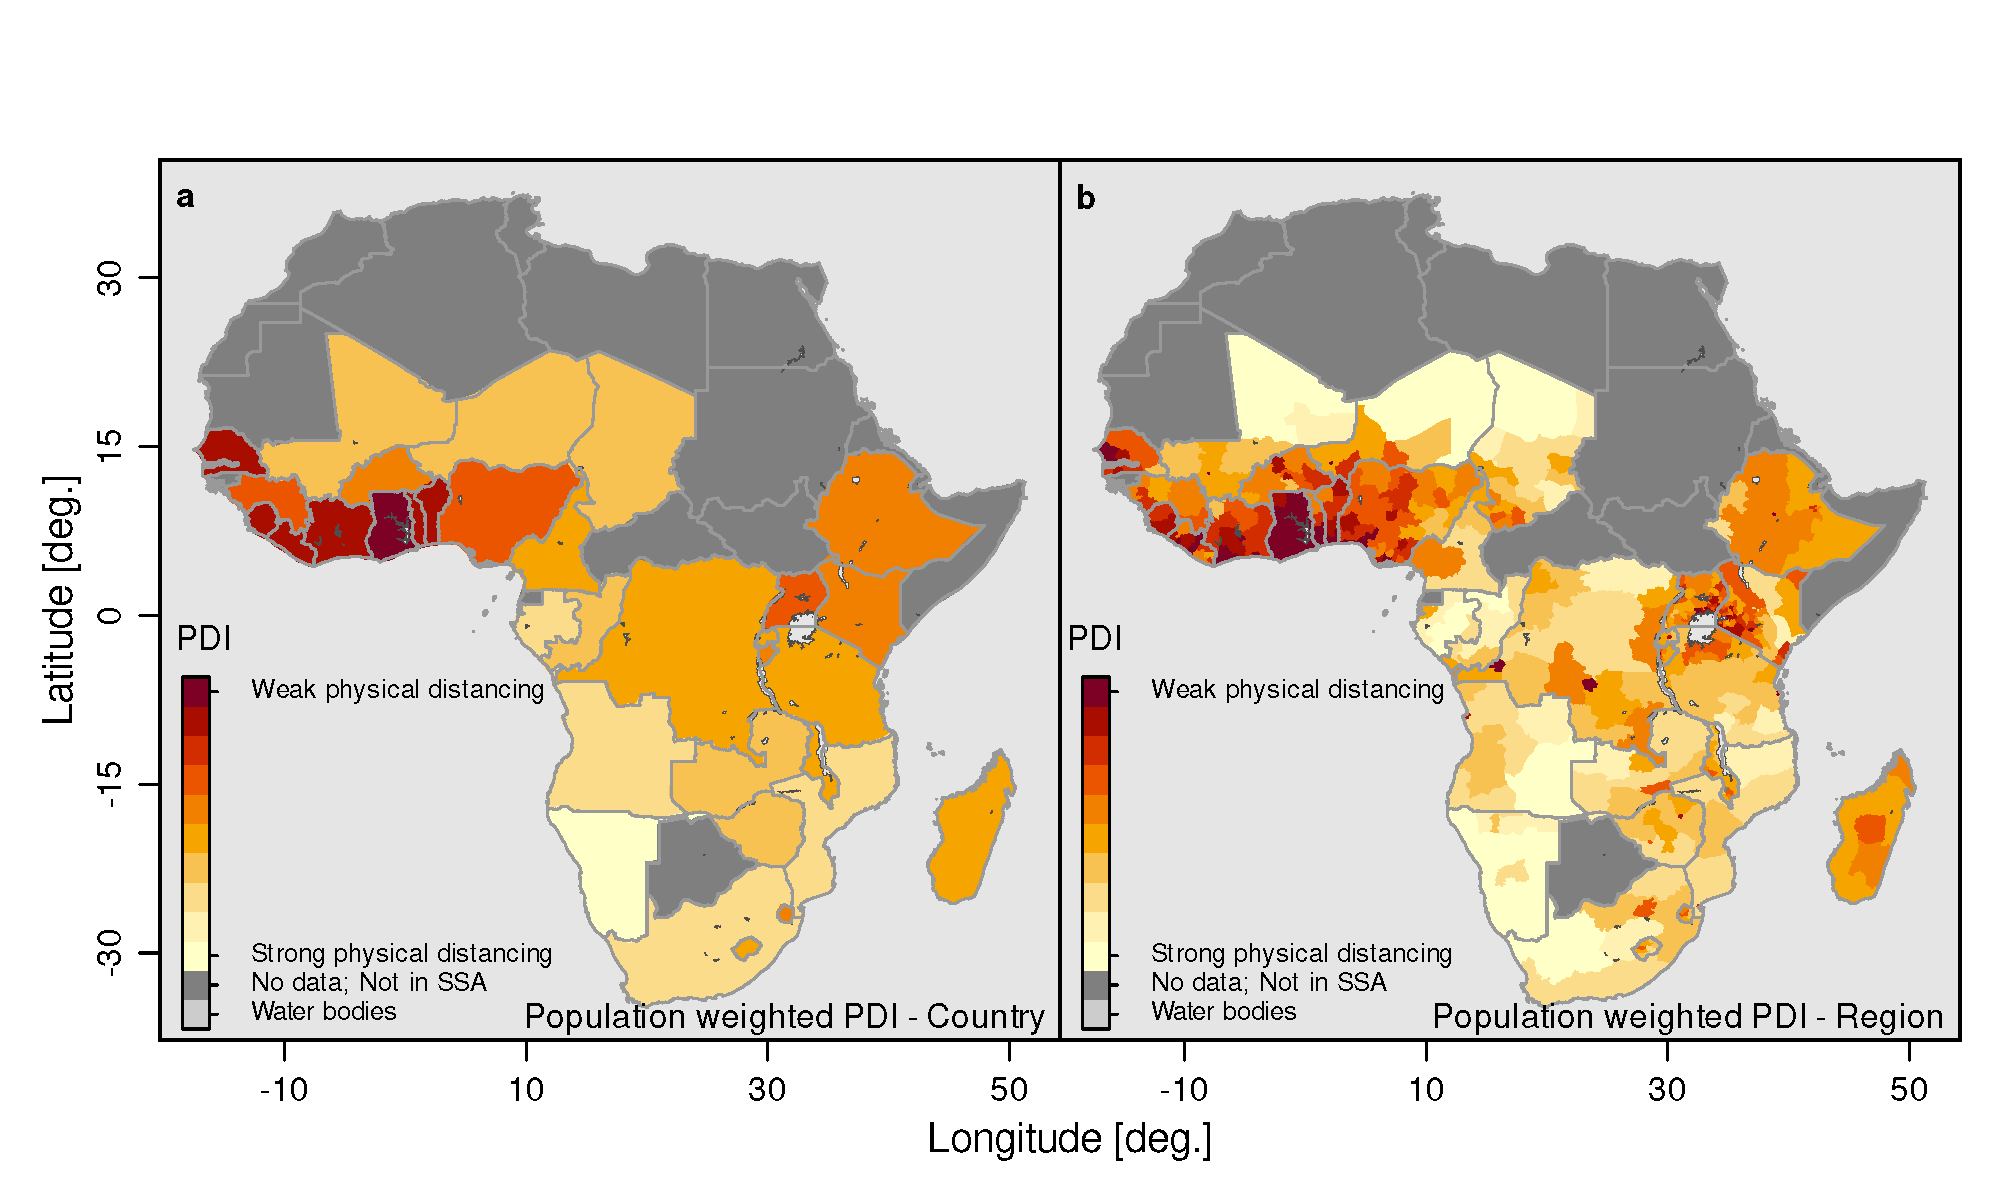 Karte von Afrika mit unterschiedlich eingefärbten Gebieten